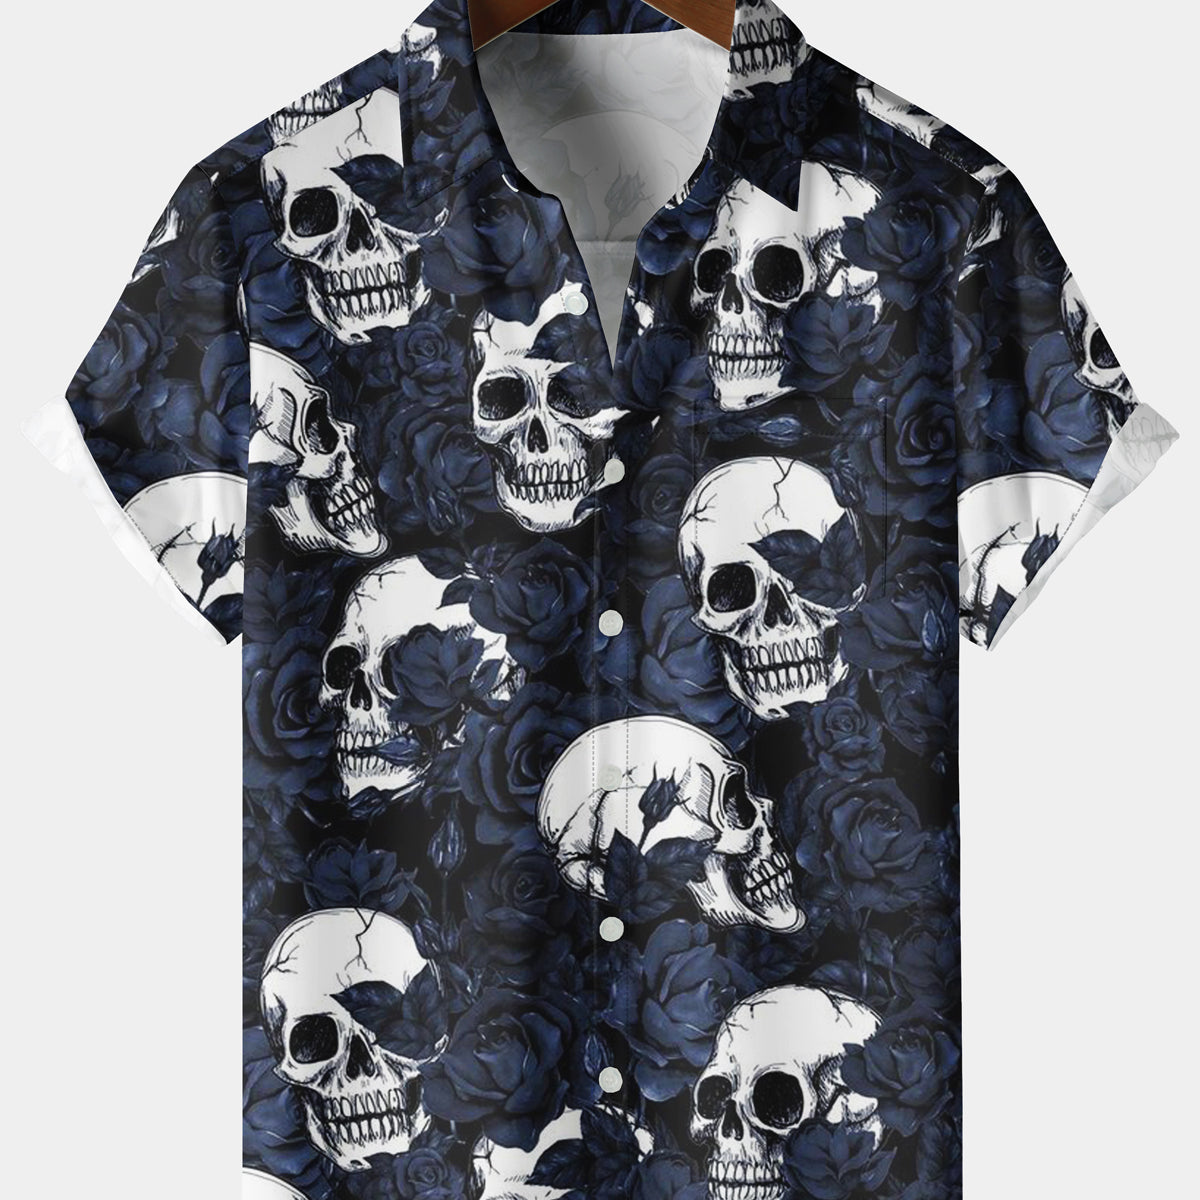 Men's Holiday Navy Blue Rose Skull Short Sleeve Shirt